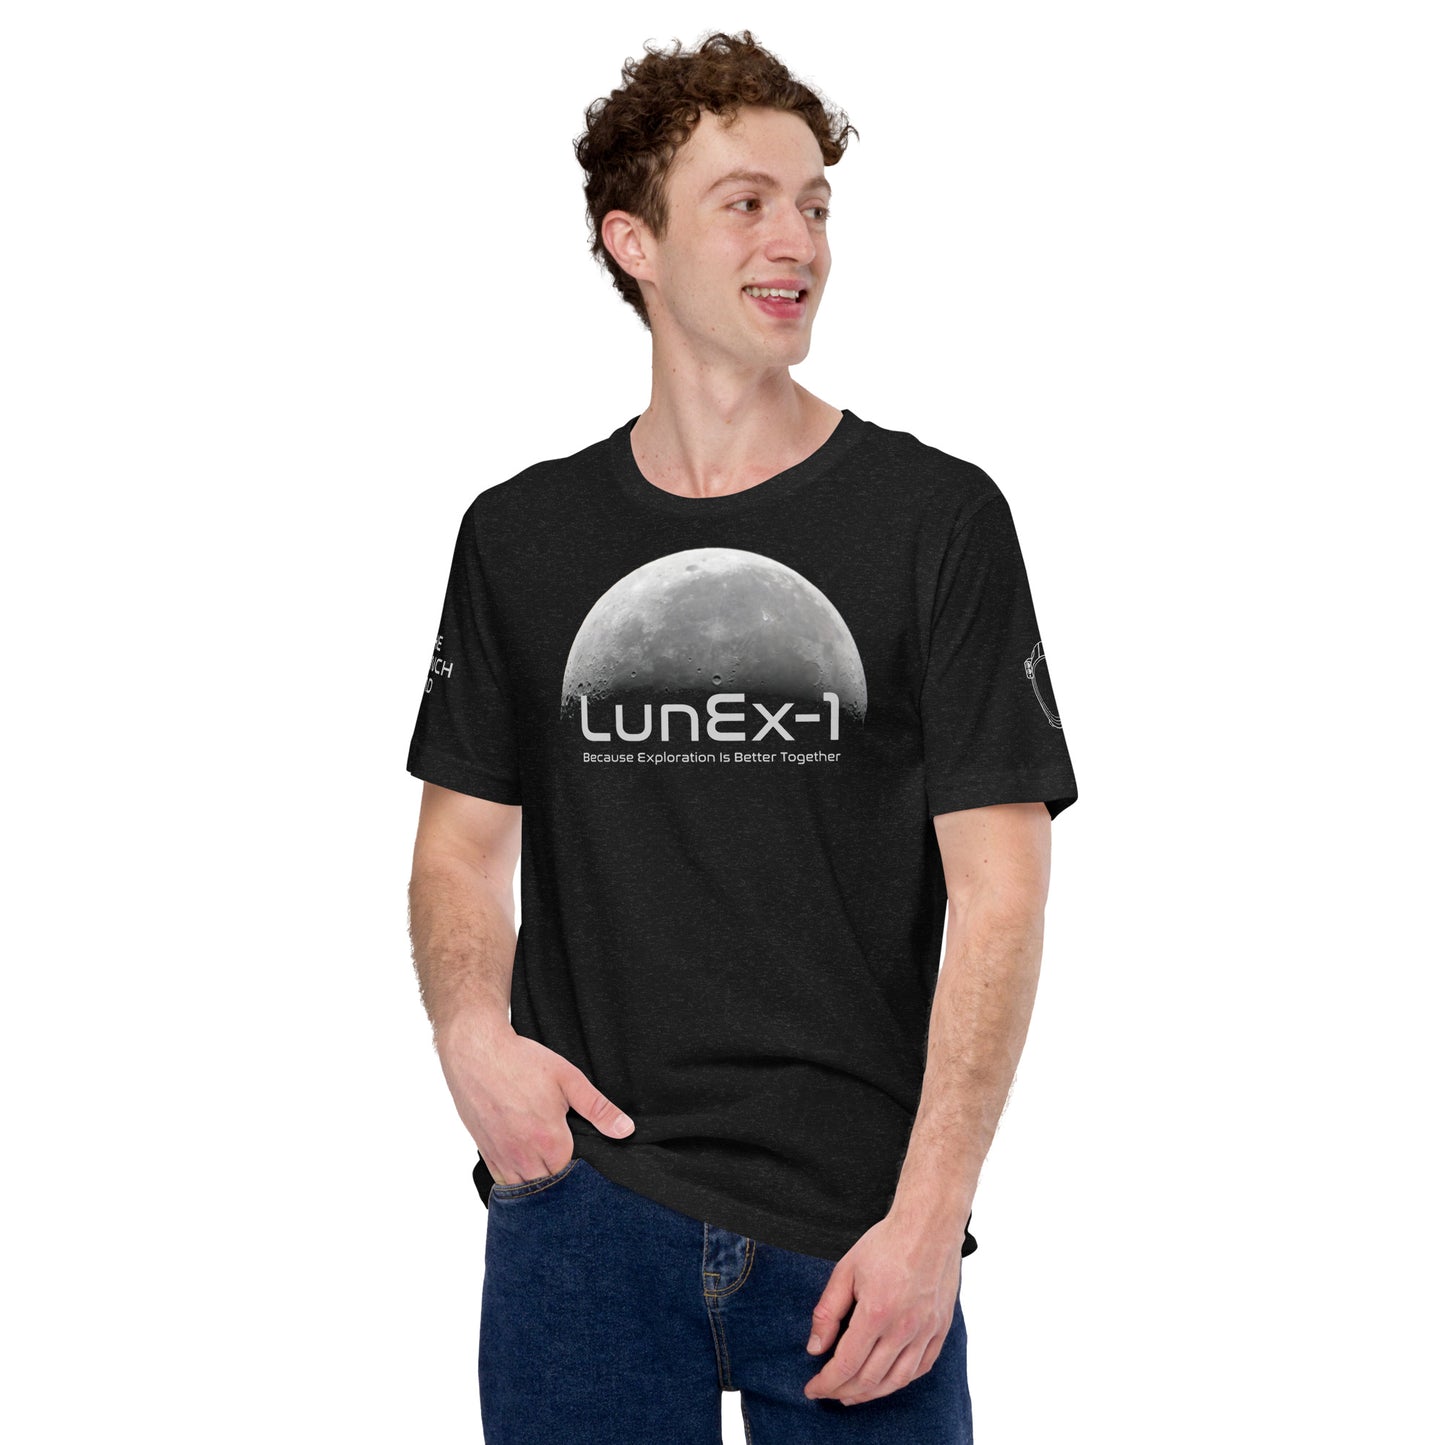 LunEx-1 Moon Tee